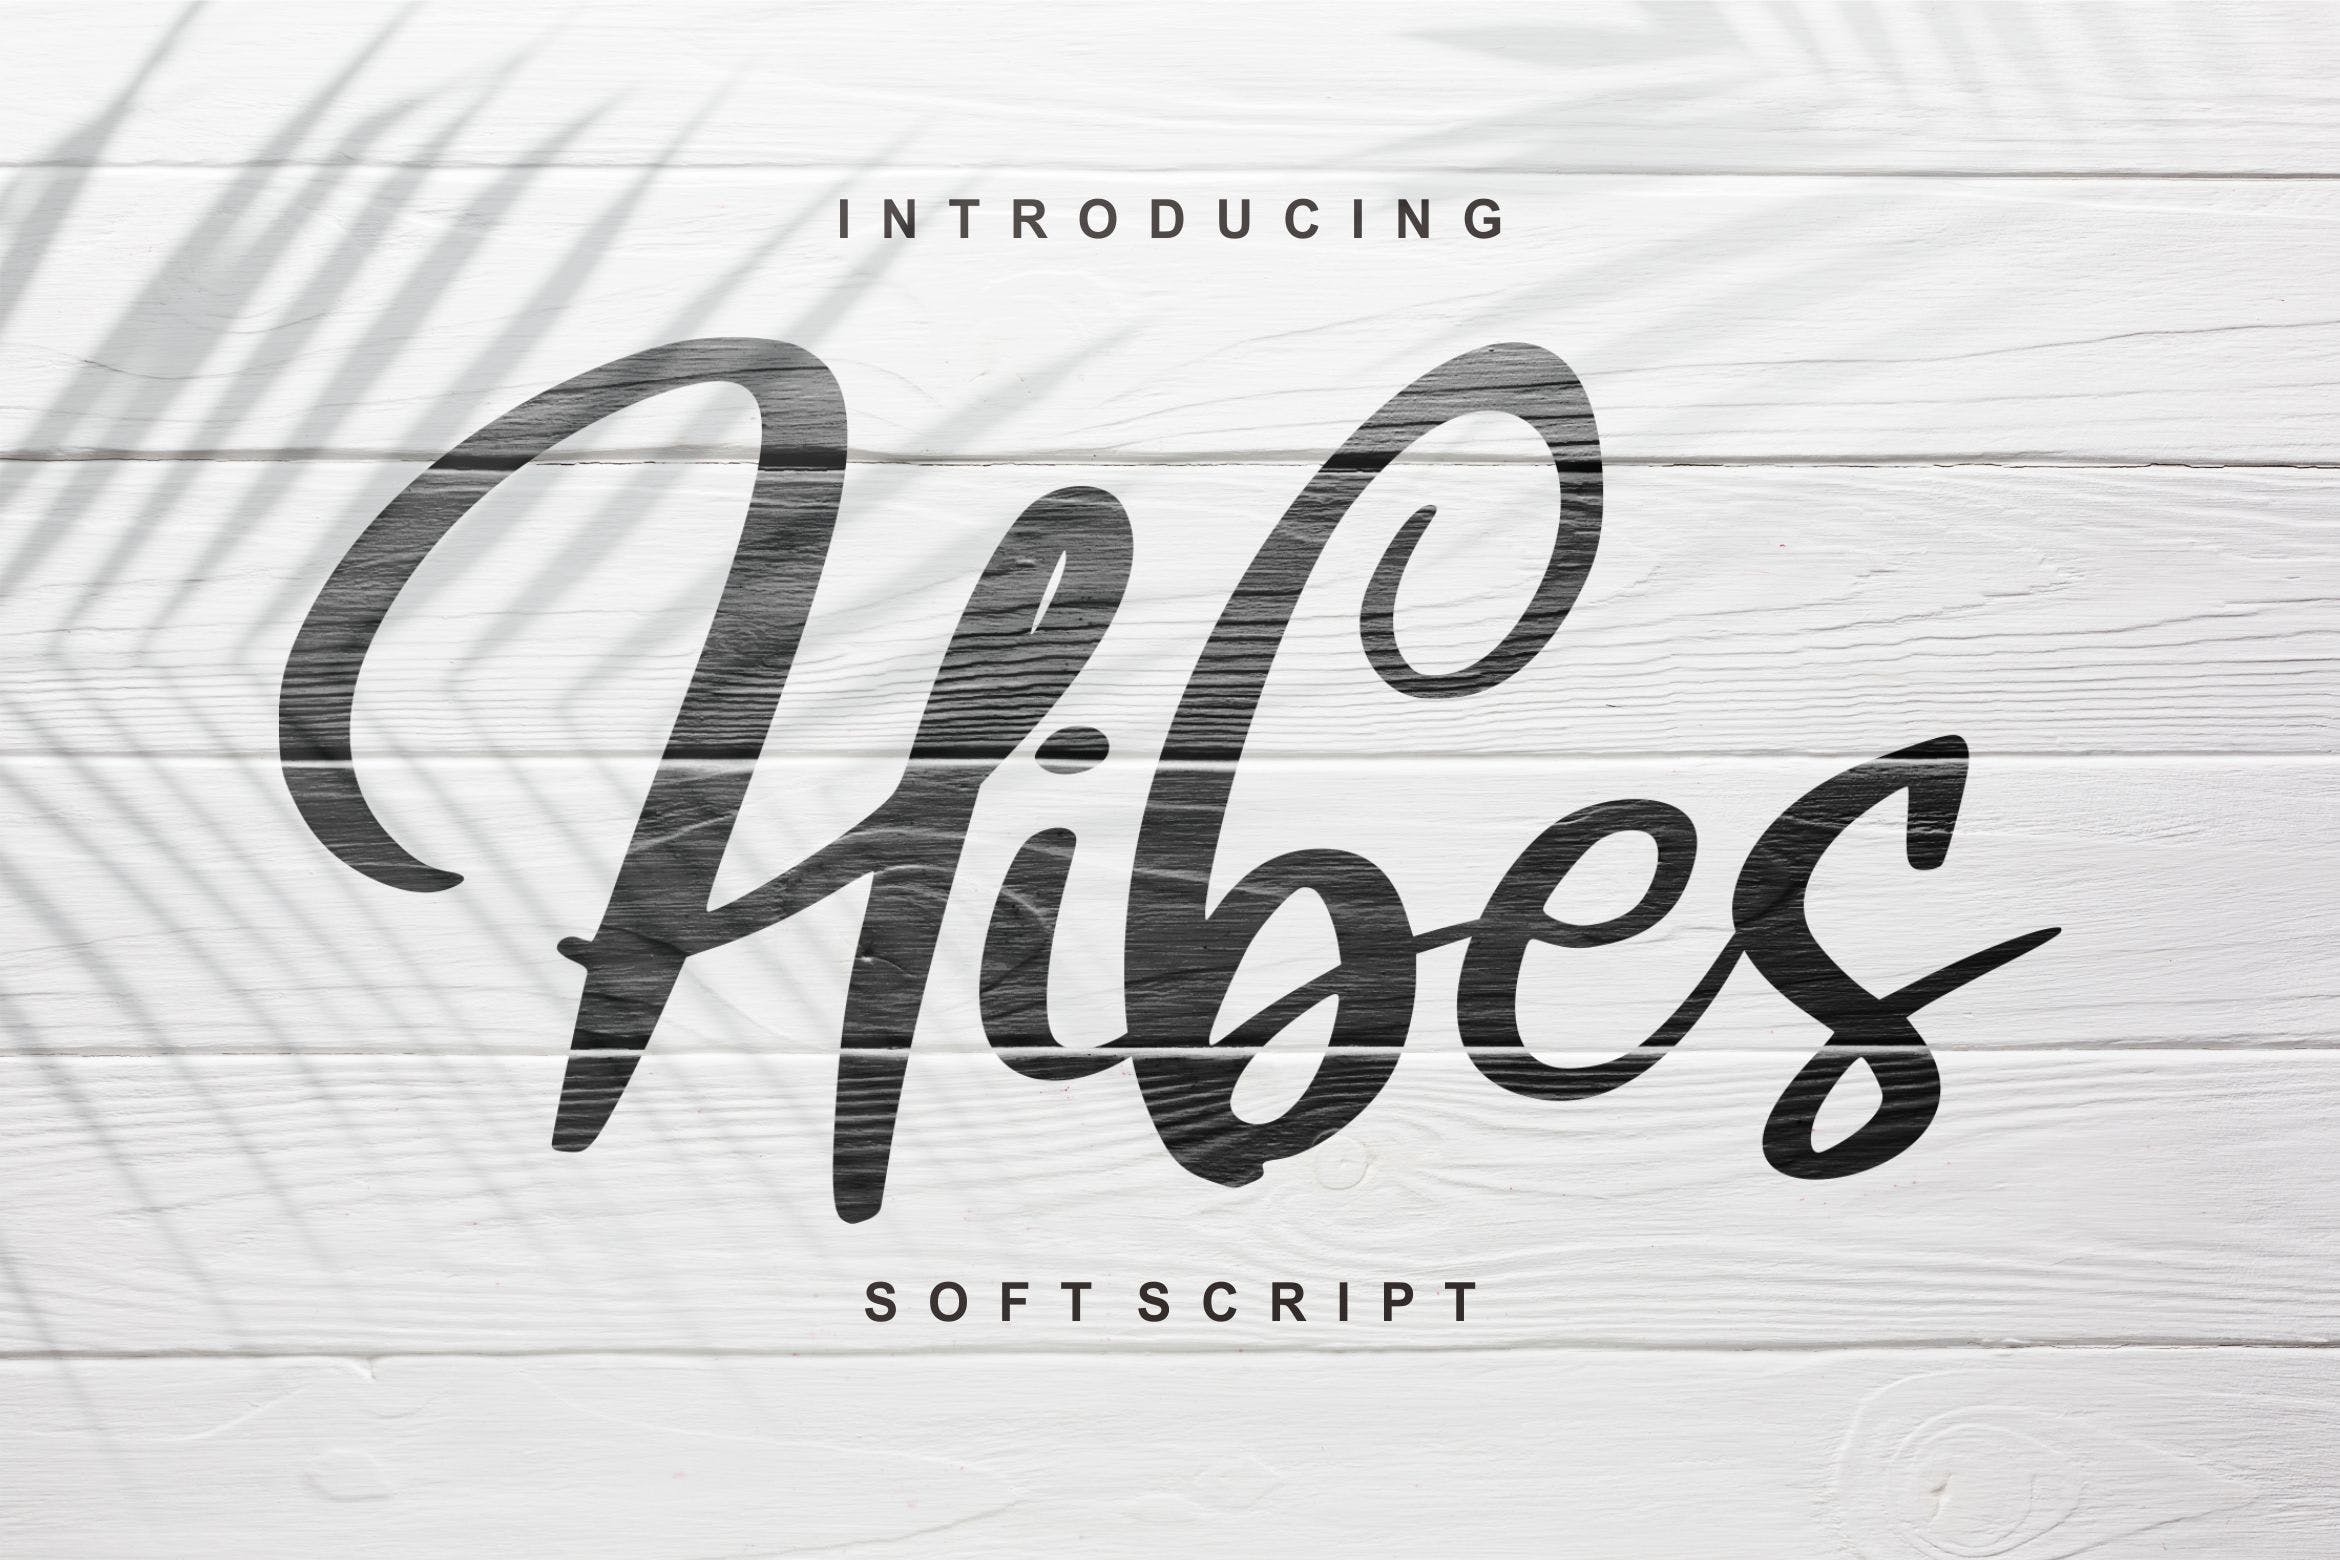 软笔刷书法风格英文手写字体第一素材精选 Hibes | Soft Script Font插图